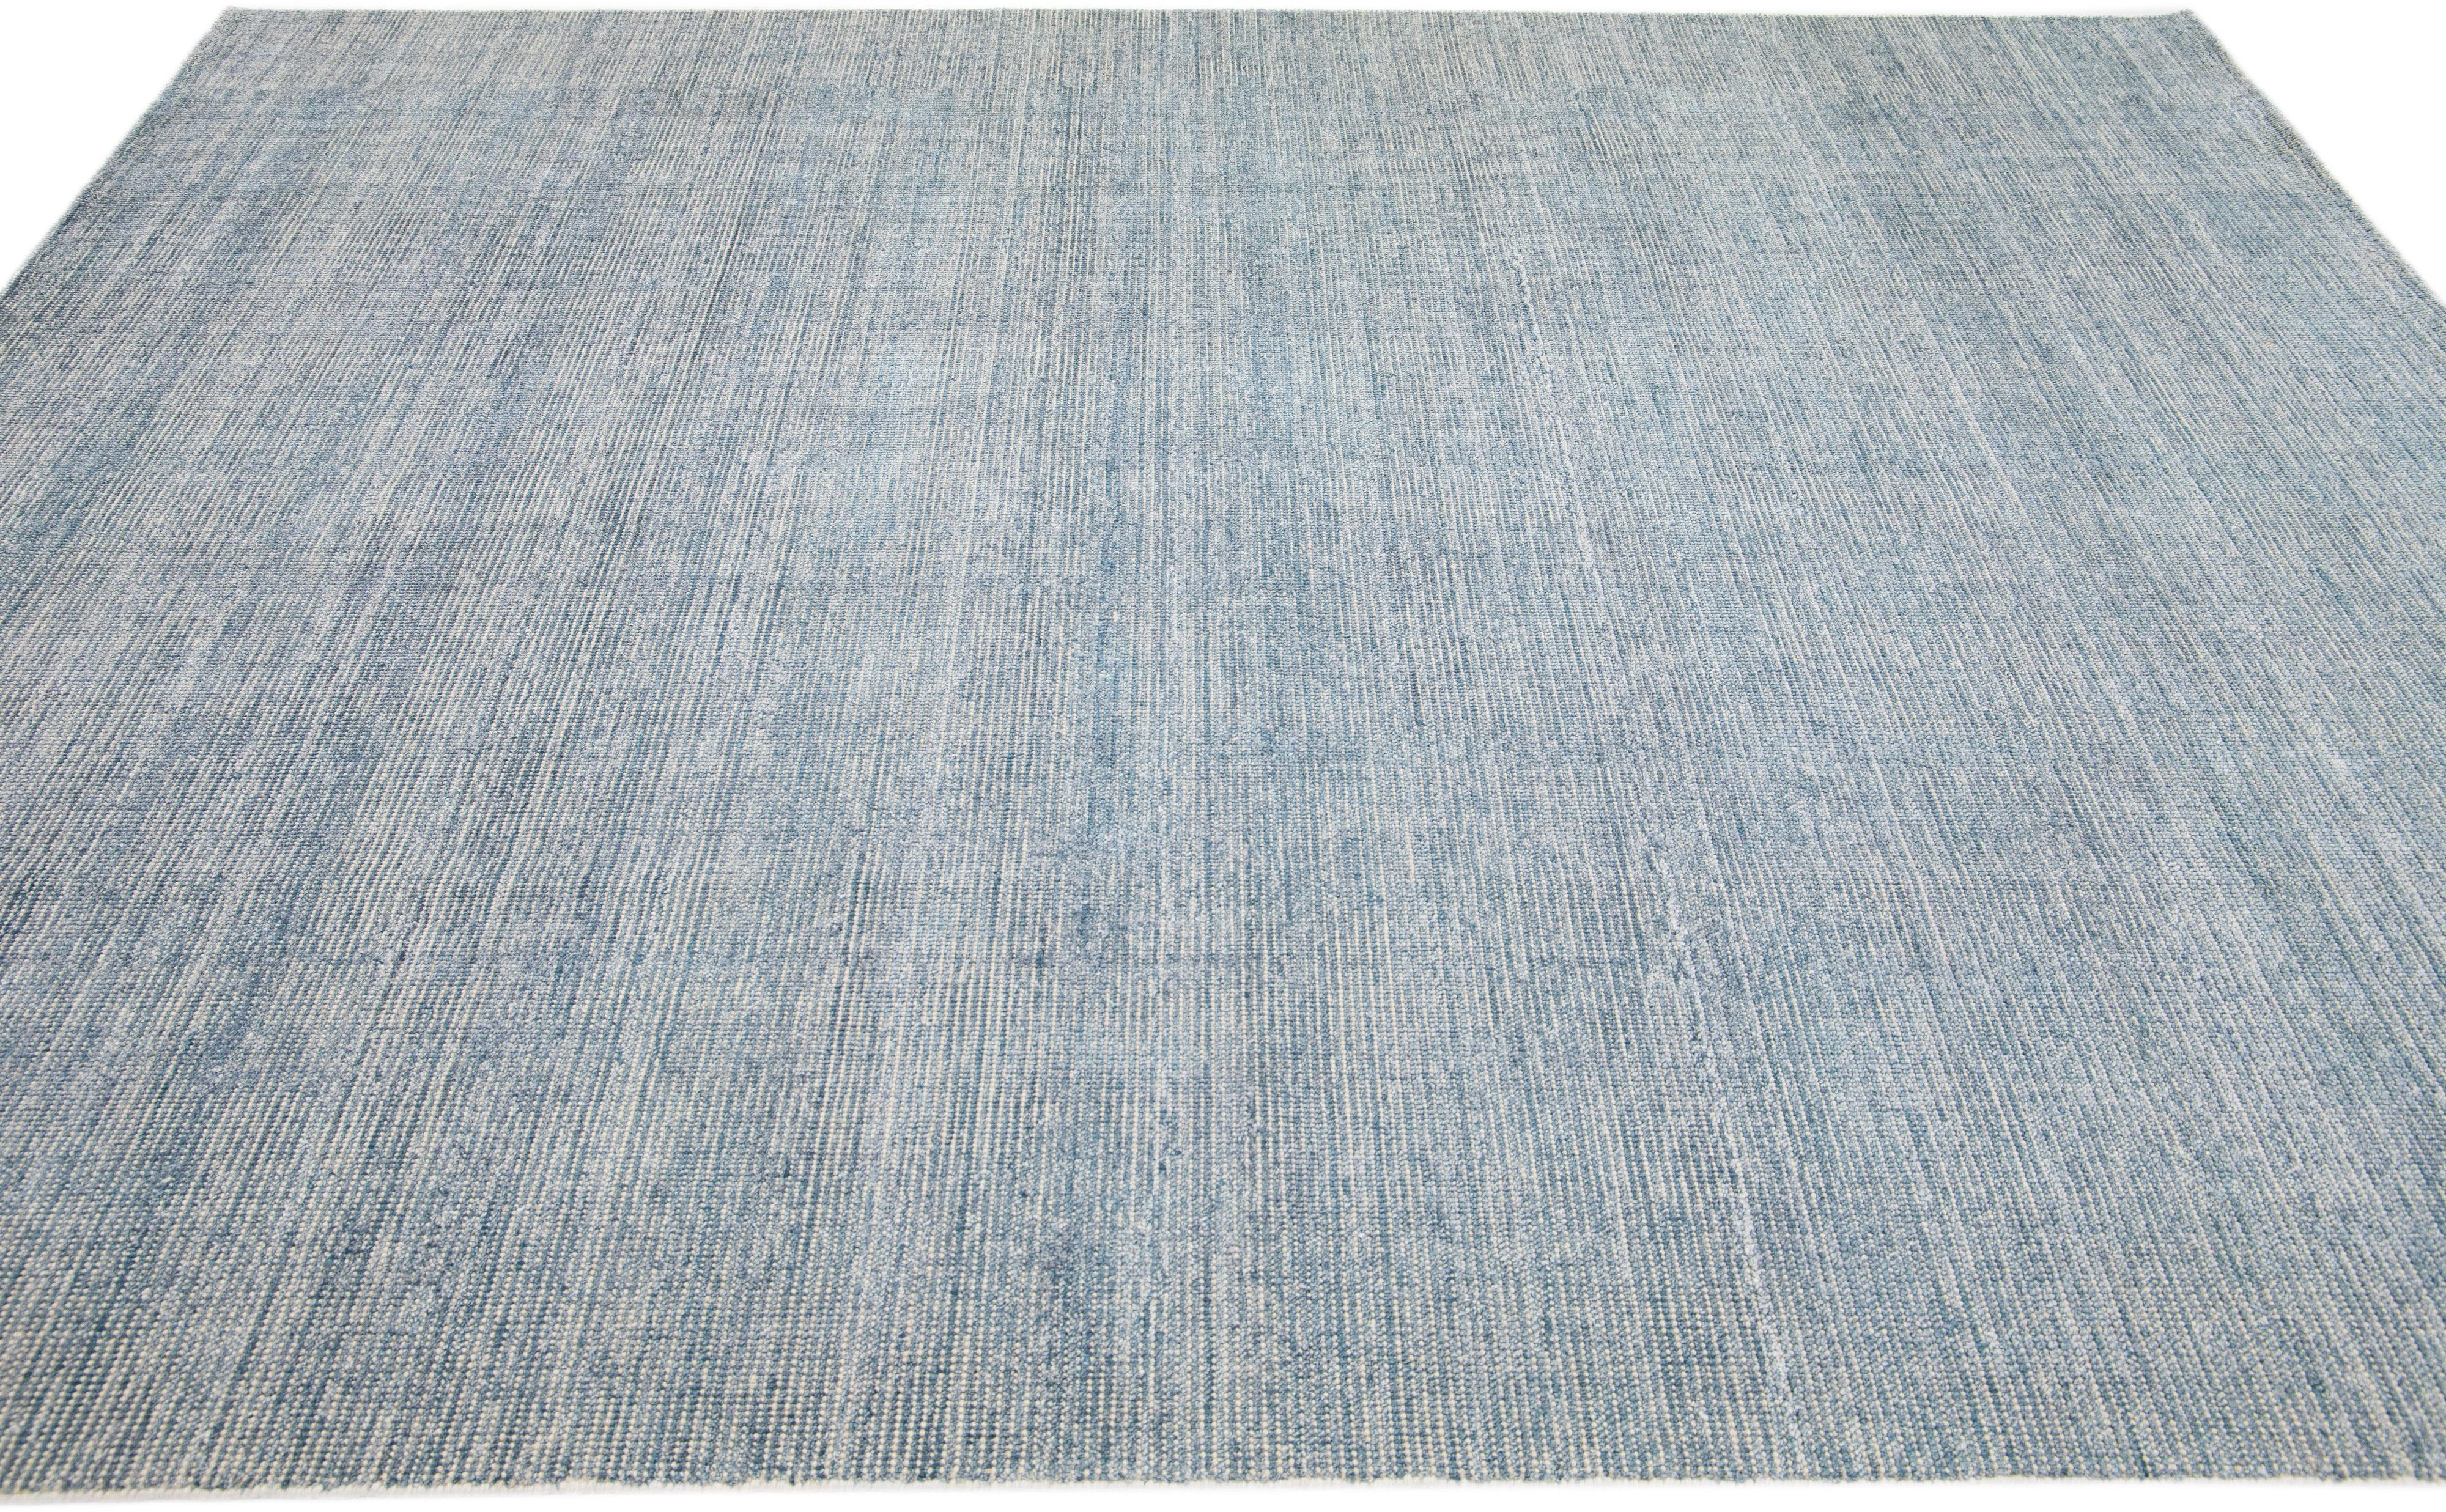 Schöner handgefertigter indischer Rillenteppich aus Bambus und Seide von Apadanas mit einem grauen Feld. Dieser Teppich aus der Groove Collection hat ein unifarbenes Allover-Muster.

Dieser Teppich misst 8' x 10'.

Kundenspezifische Farben und